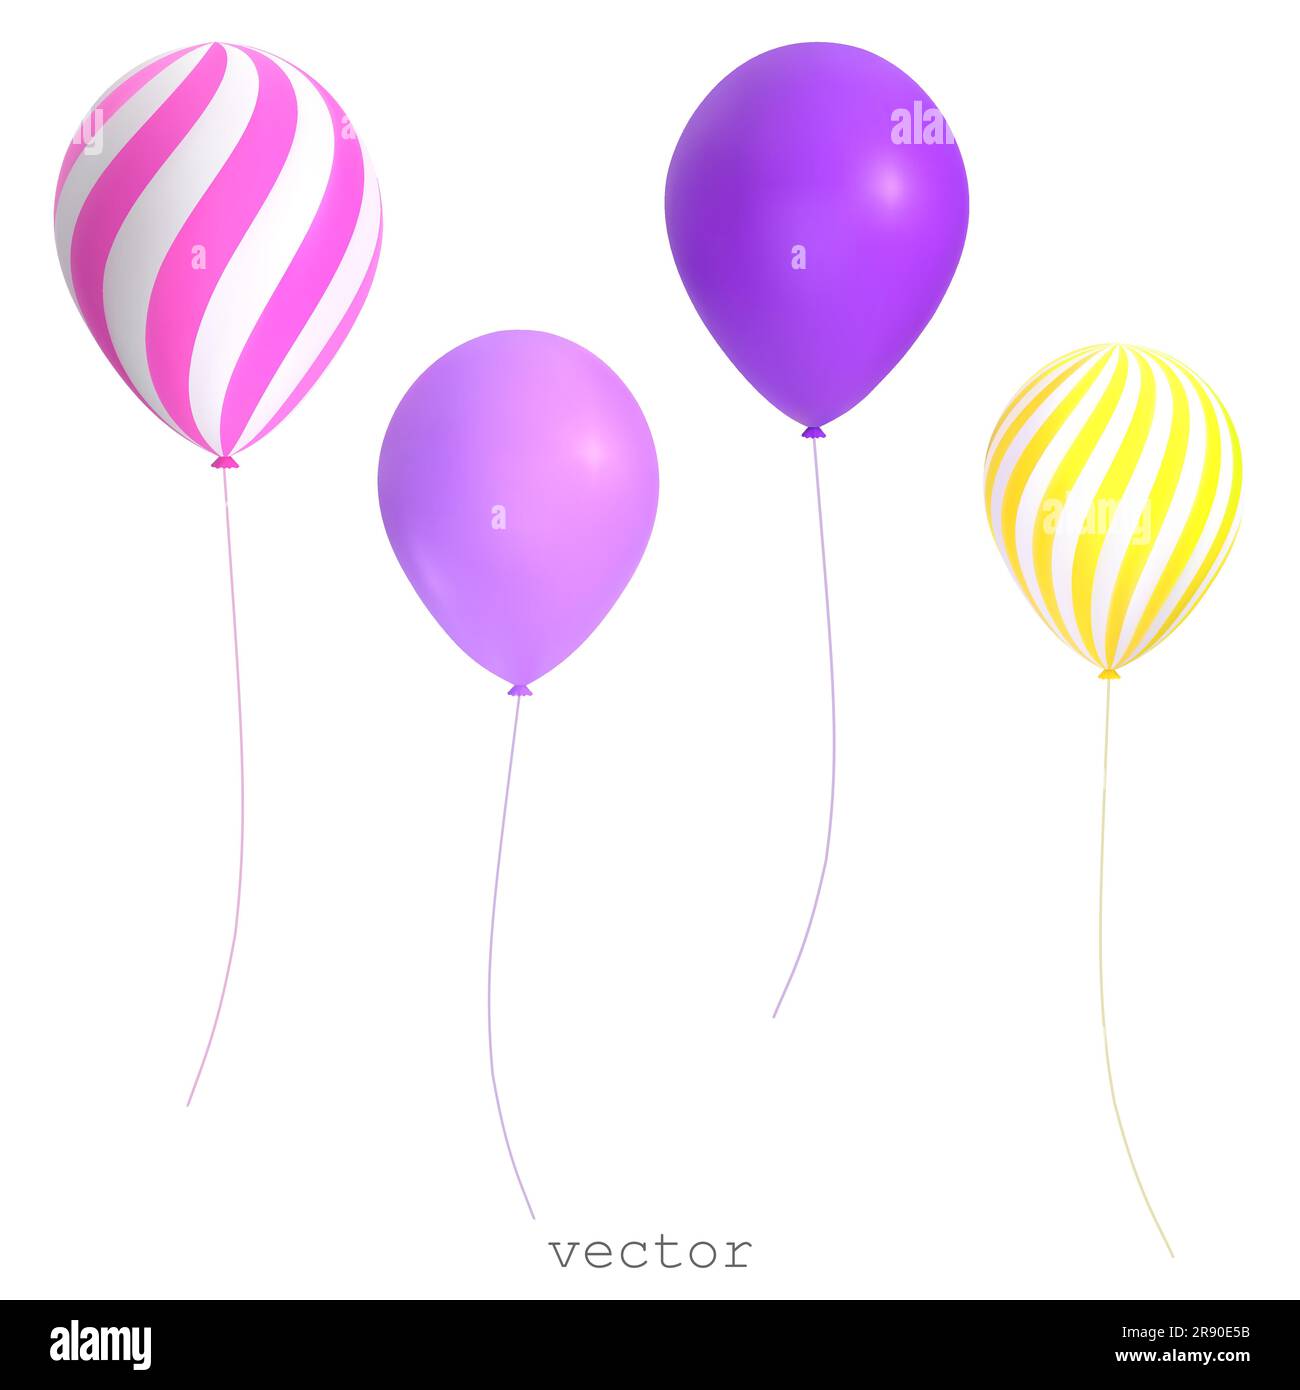 Palloncini vettoriali 3D. Elementi decorativi a righe viola, giallo e rosa per le feste. Oggetti di design per festeggiamenti e compleanni. Illustrazione vettoriale colorata i Illustrazione Vettoriale